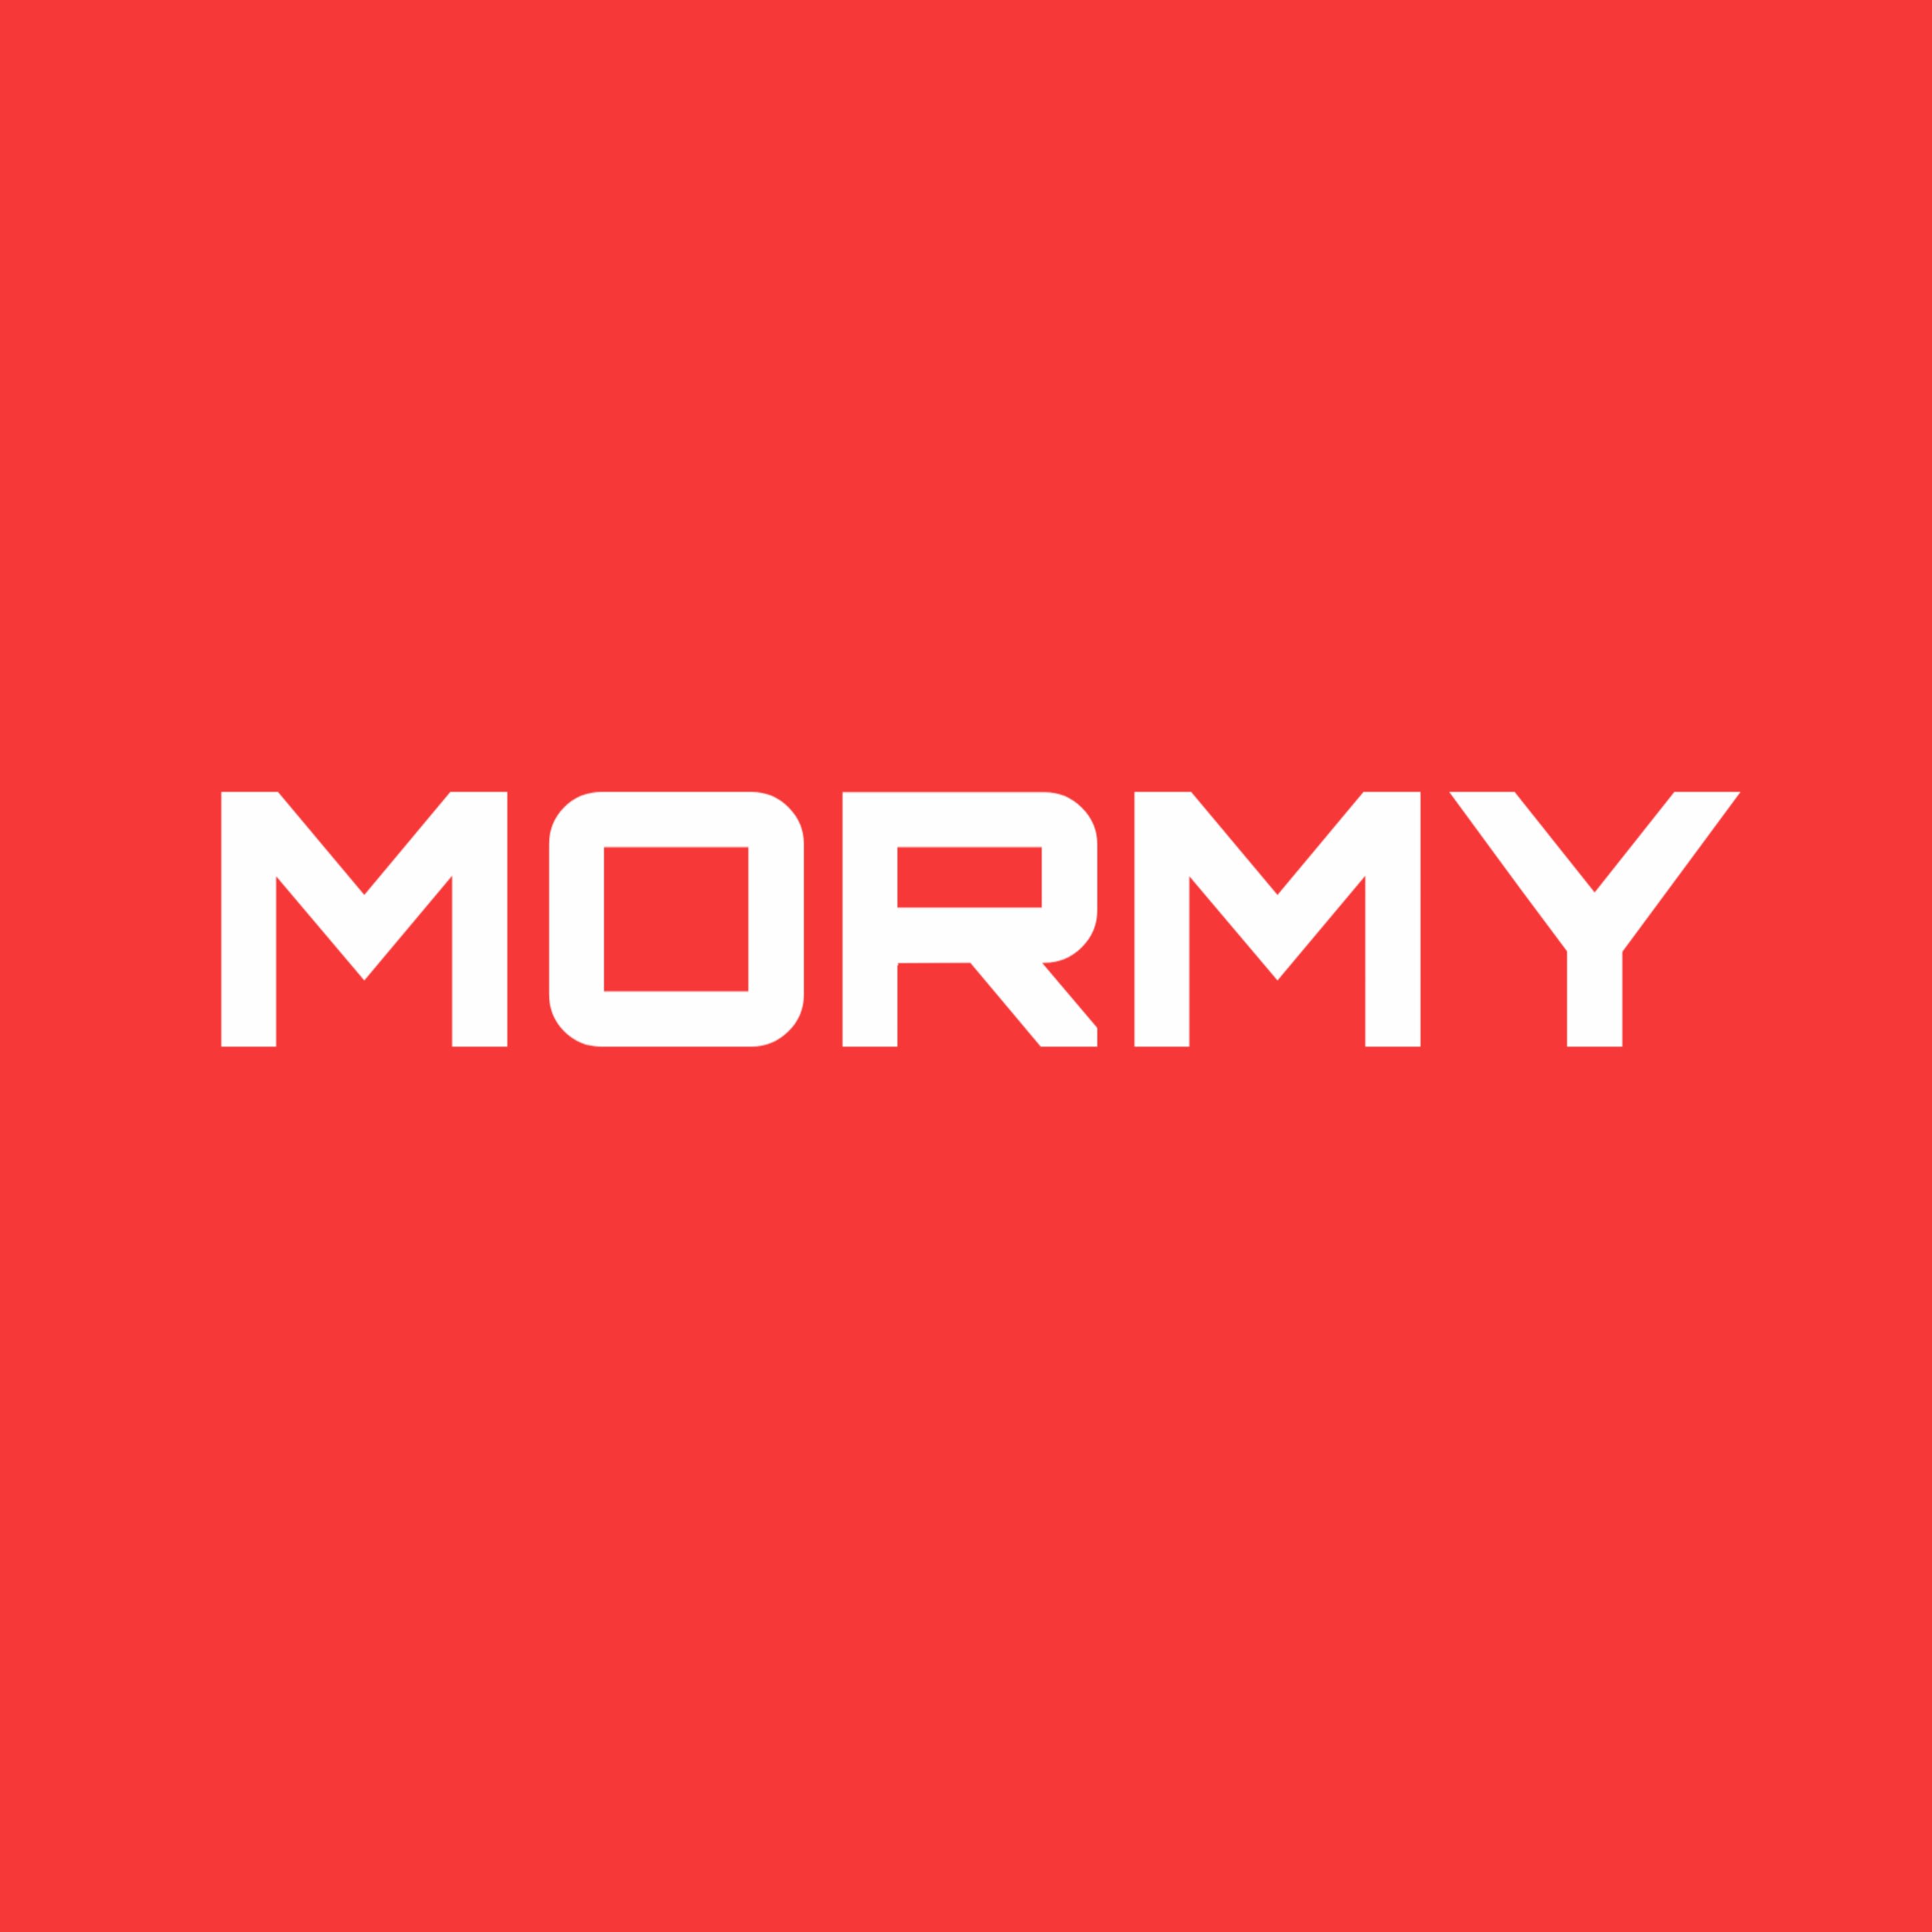 Mormy